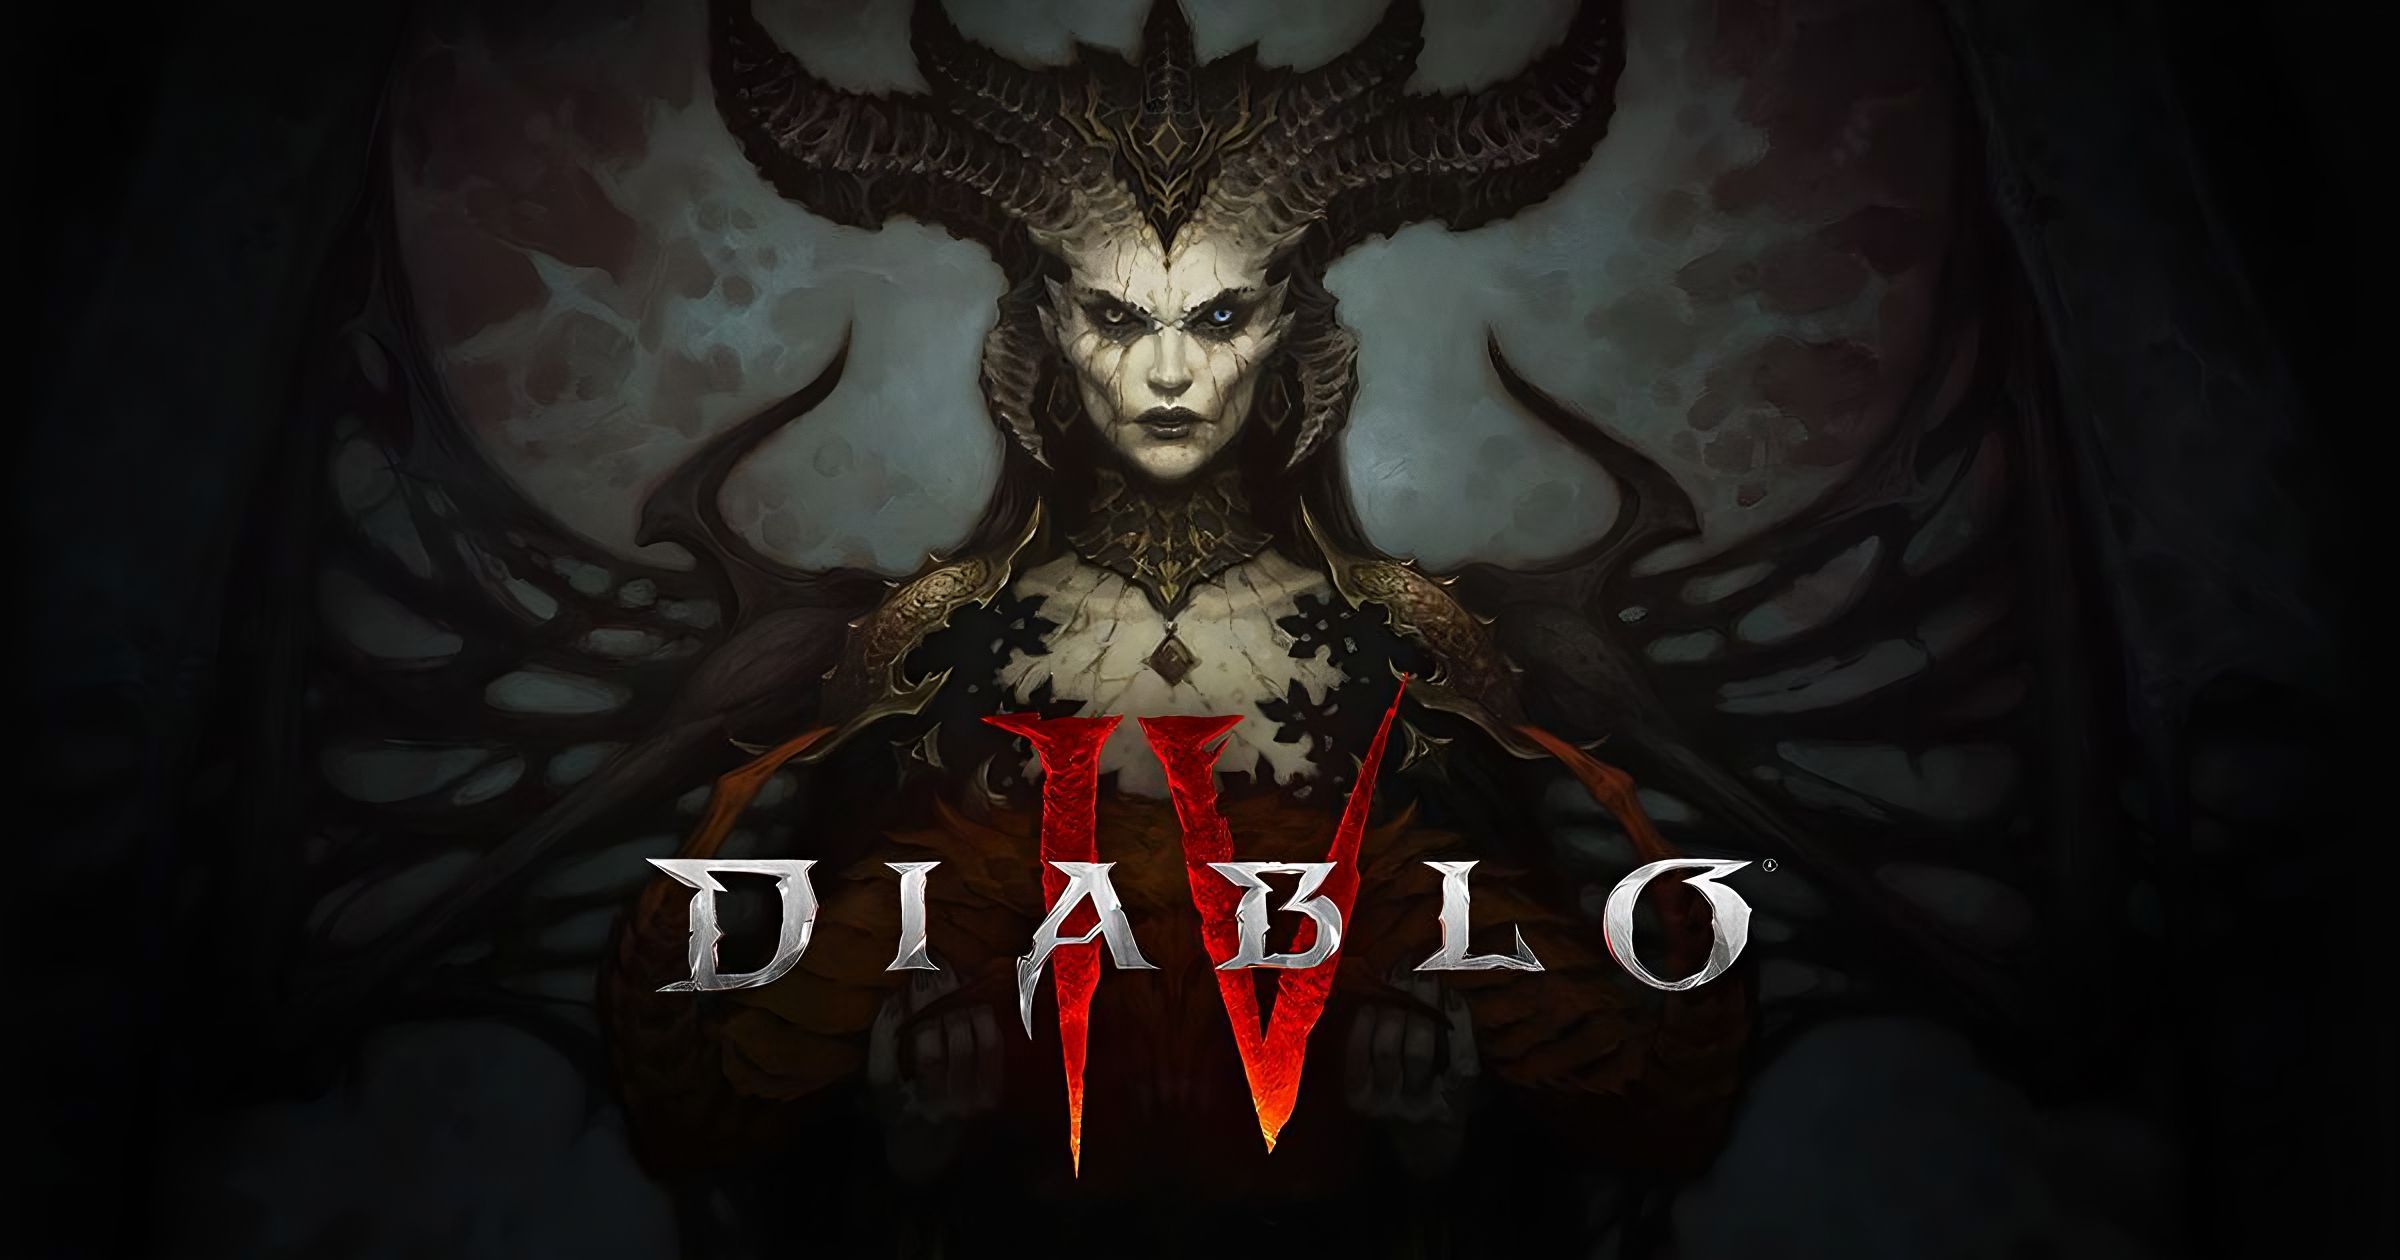 Grafika przedstawiająca demoniczną postać z rogami i mrocznymi skrzydłami na tle logo gry "Diablo IV".